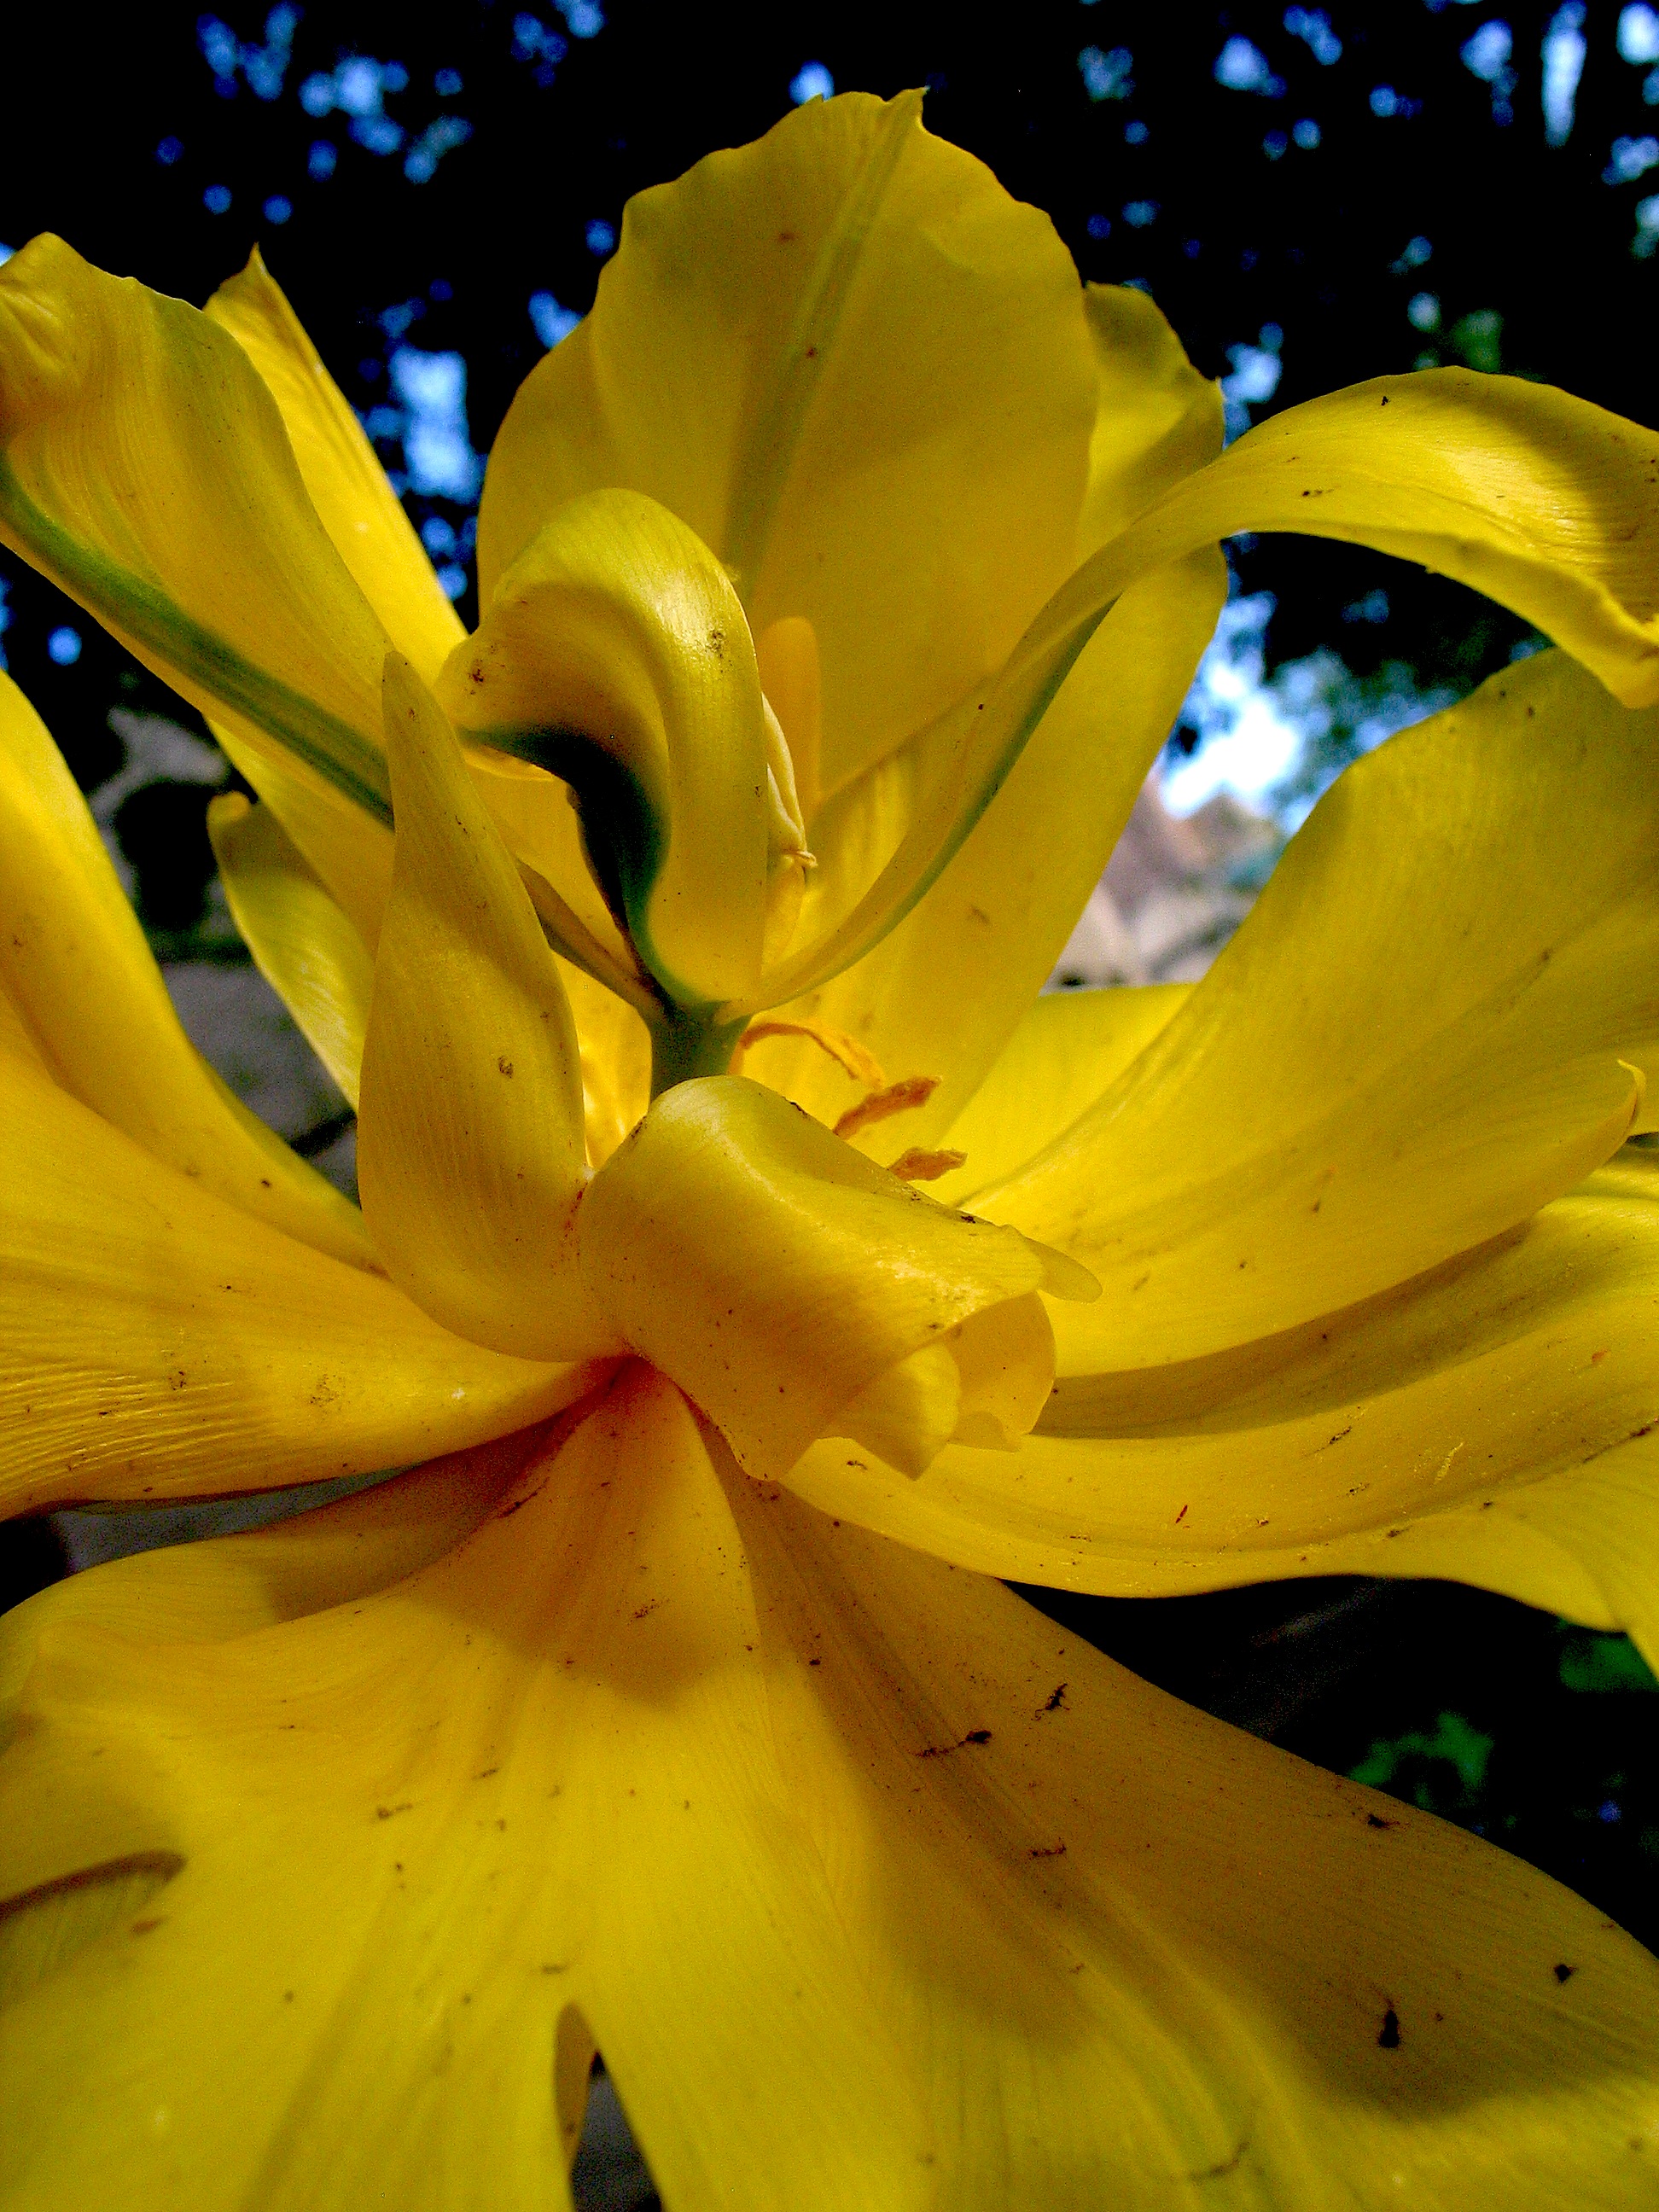 Close-up petals of an unfurling flower